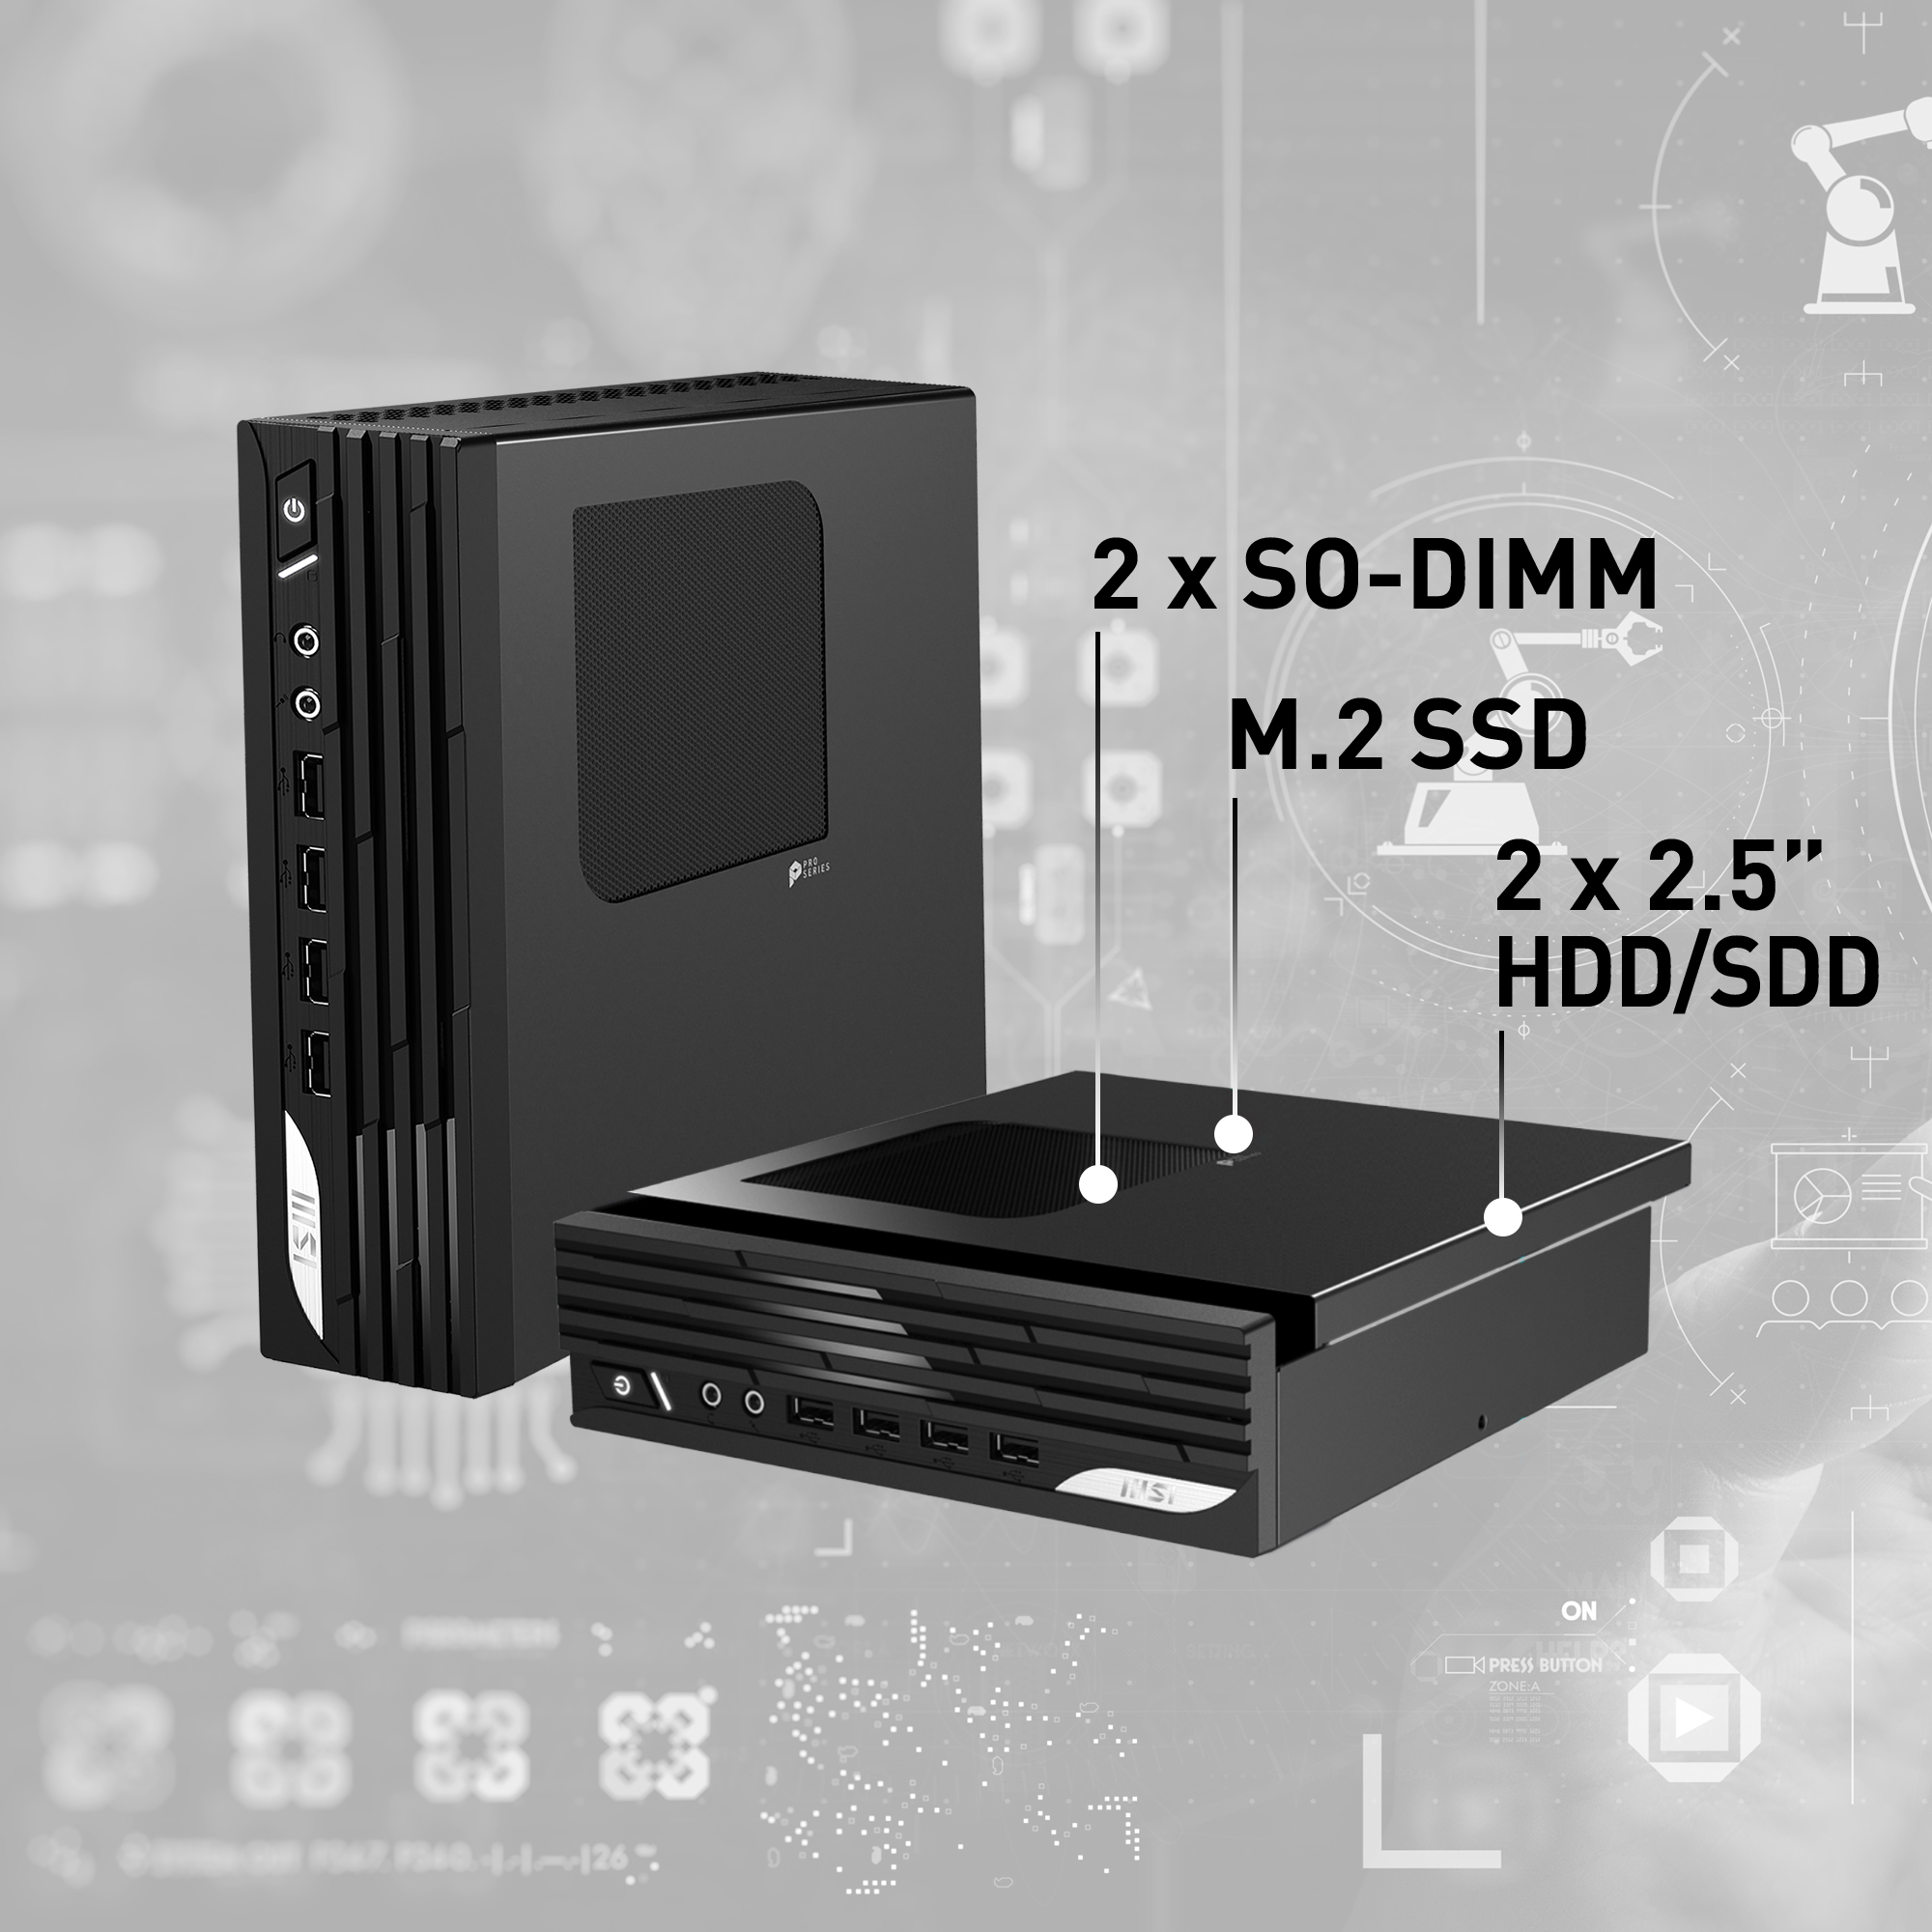 MSI PRO DP21 12M Intel Core i7-12700 Barebone, Mini-PC, 2.3L, Type-C, USB 3.2 Gen2, HDMI, DisplayPort, LAN, WiFi, BT, VESA, Supports Max 64GB DDR4 SO-DIMM (2 Slots), M.2 (1 Slot), 2.5'SSD/HDD (2 Slot)